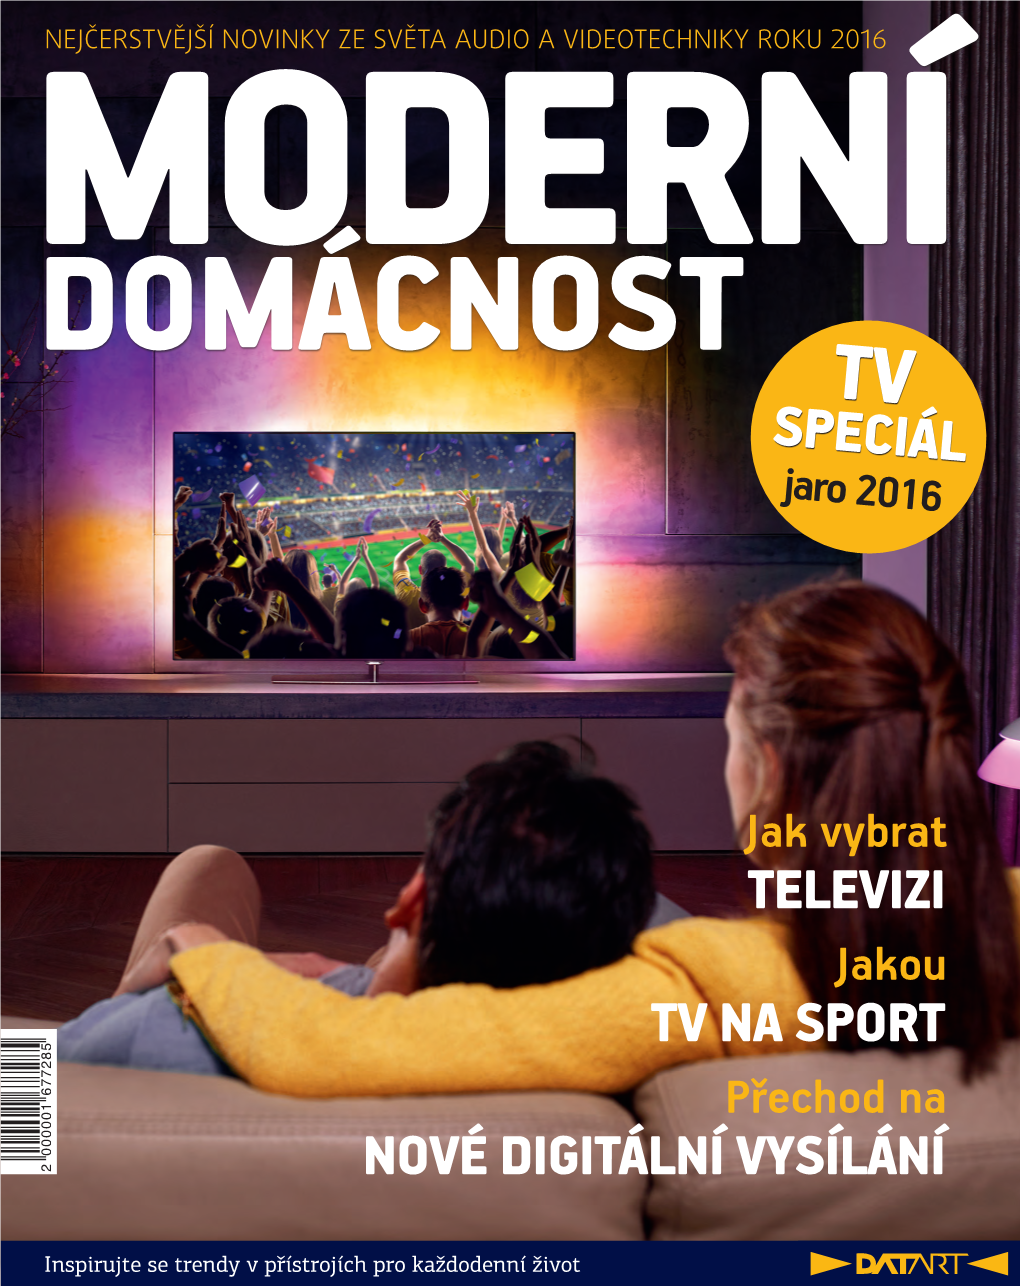 Televizi Tv Na Sport Nové Digitální Vysílání